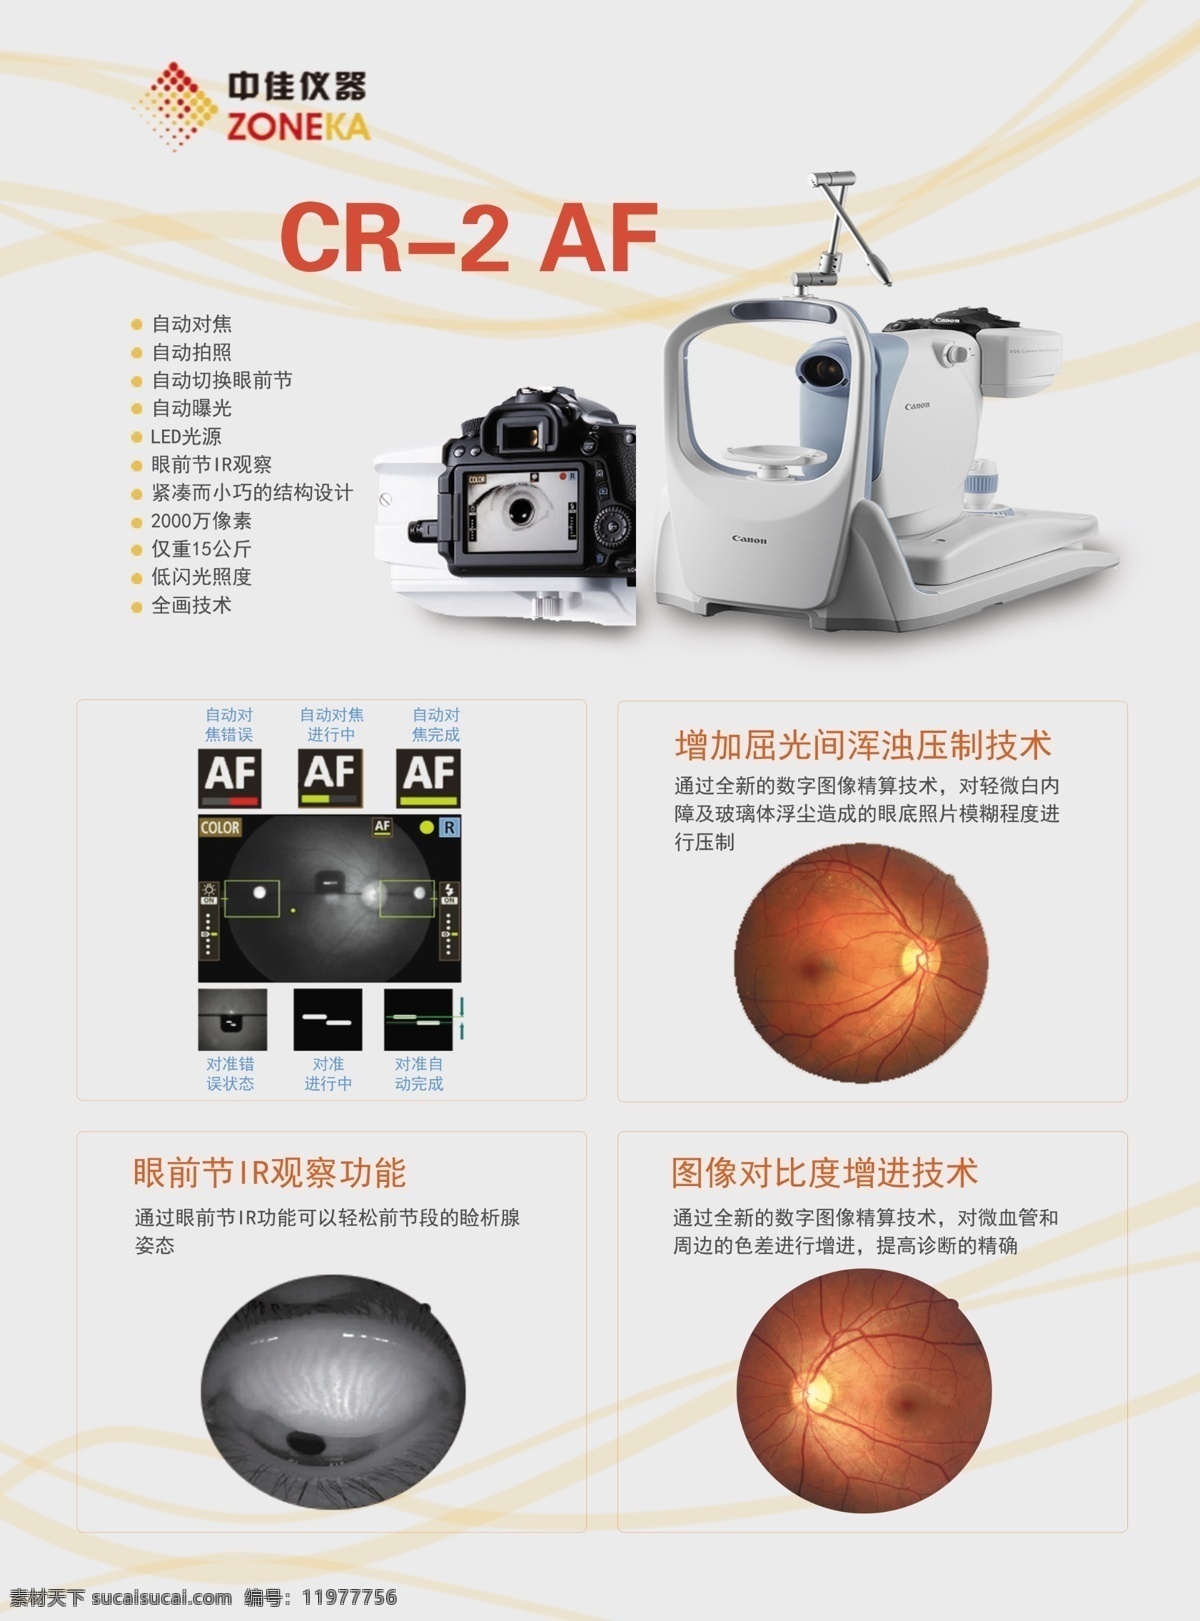 cr2 af单页单张 cr2af 医学 医疗 器材 眼睛 中佳仪器